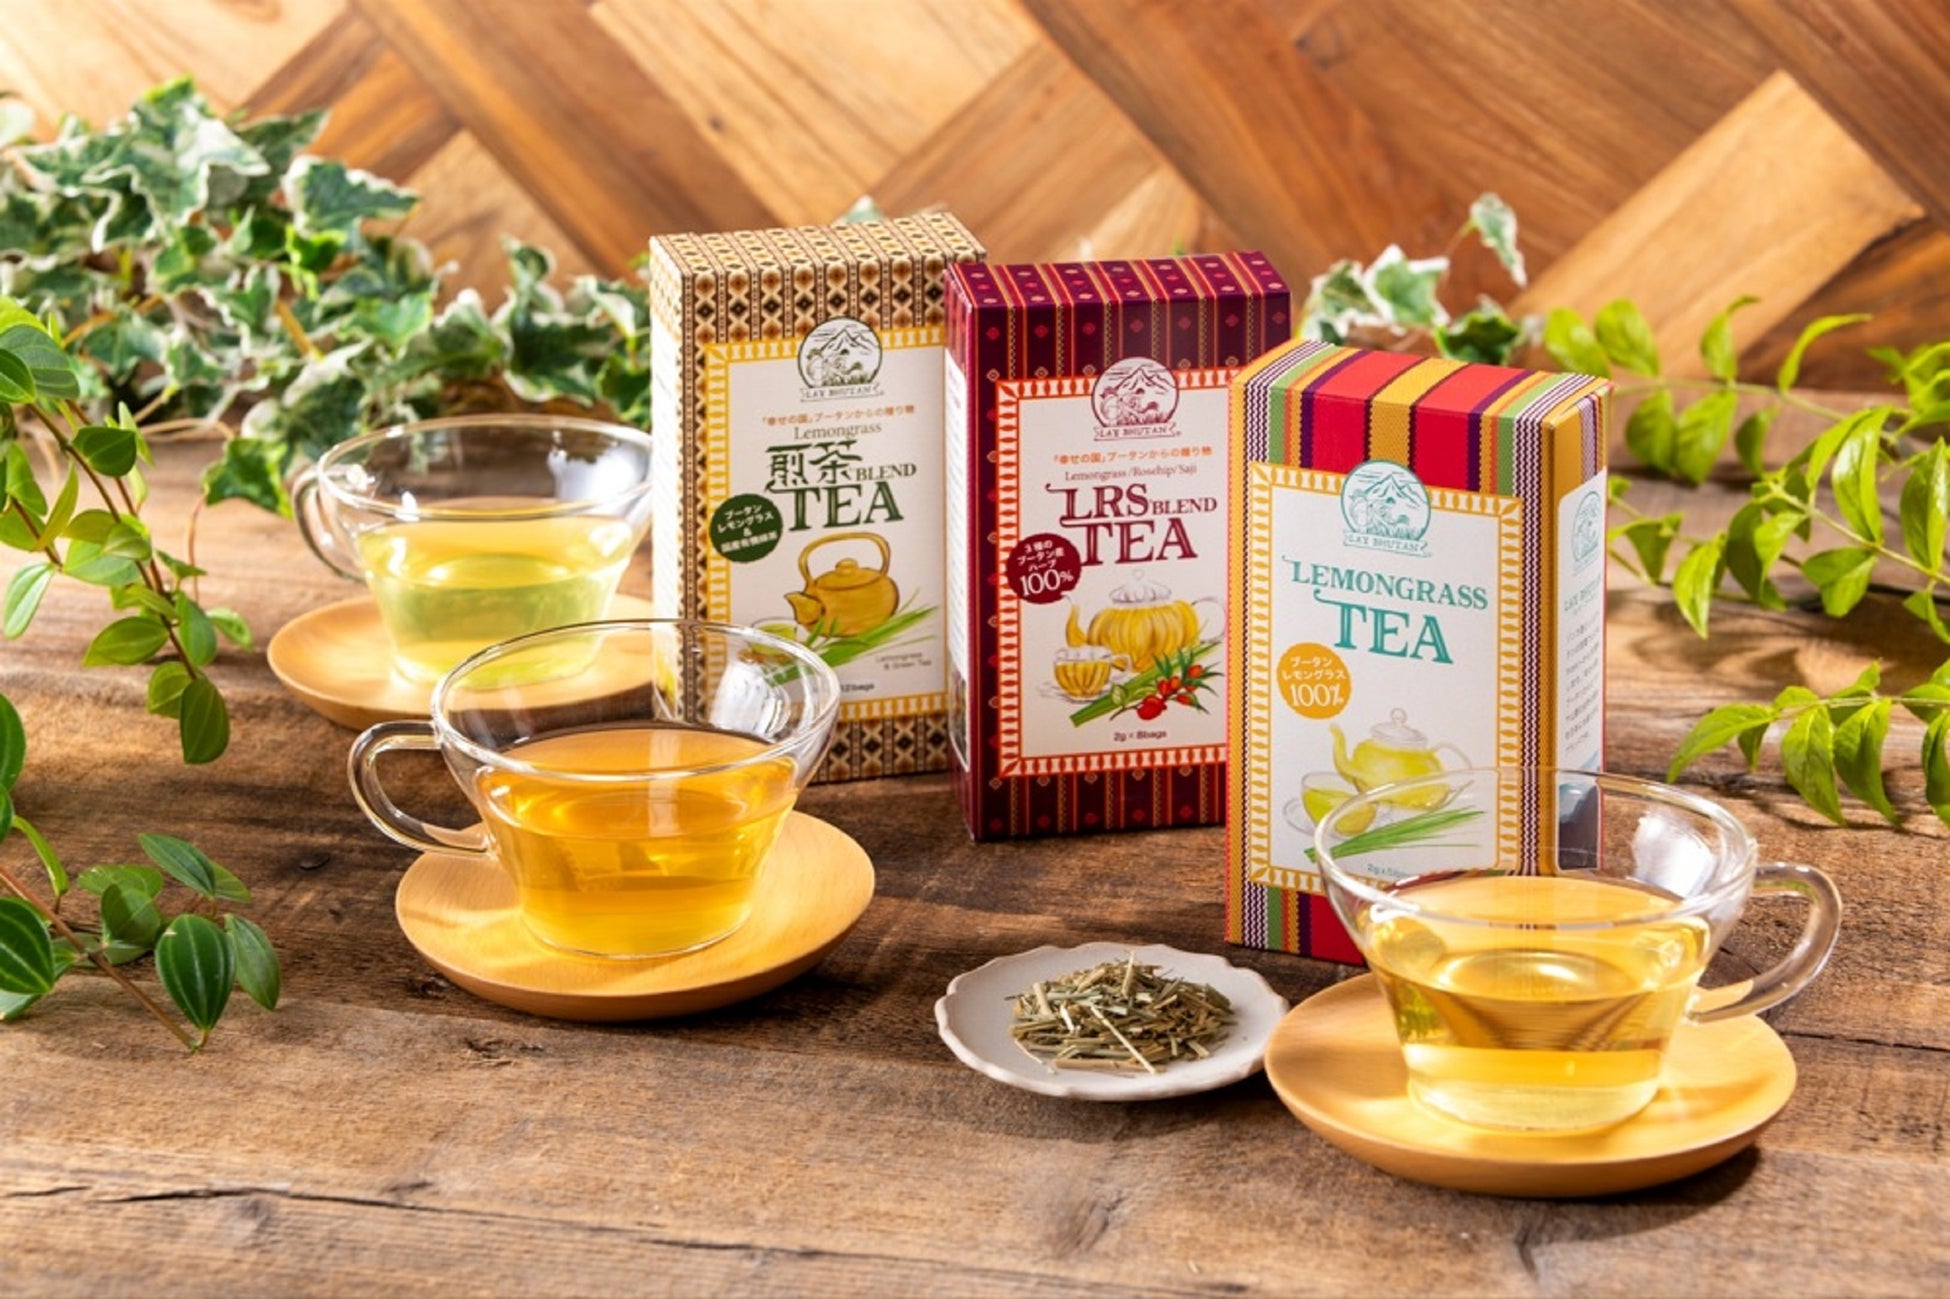 「幸せの国」ブータンに自生するレモングラスと国産有機緑茶をブレンド　環境にもブータン農家にも優しい「レイ・ブータン」の第三弾『煎茶ブレンドティー』が登場